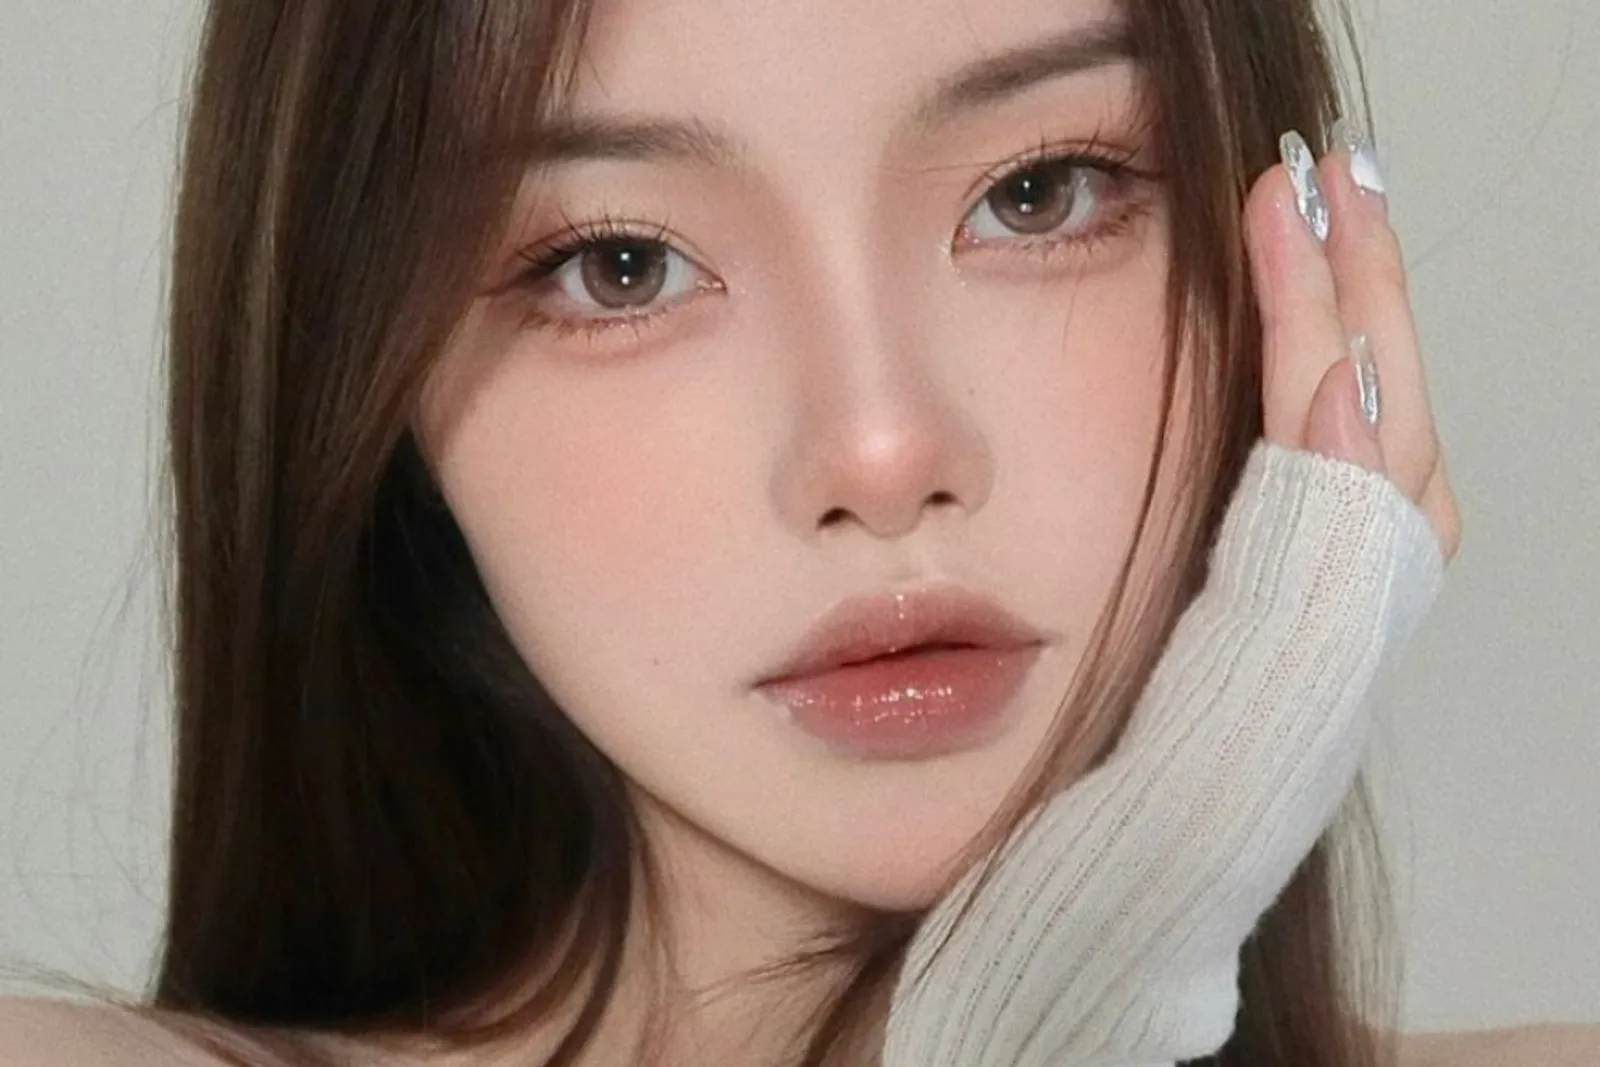 Tampil Imut Bak Perempuan Tiongkok, Begini Cara Makeup-nya